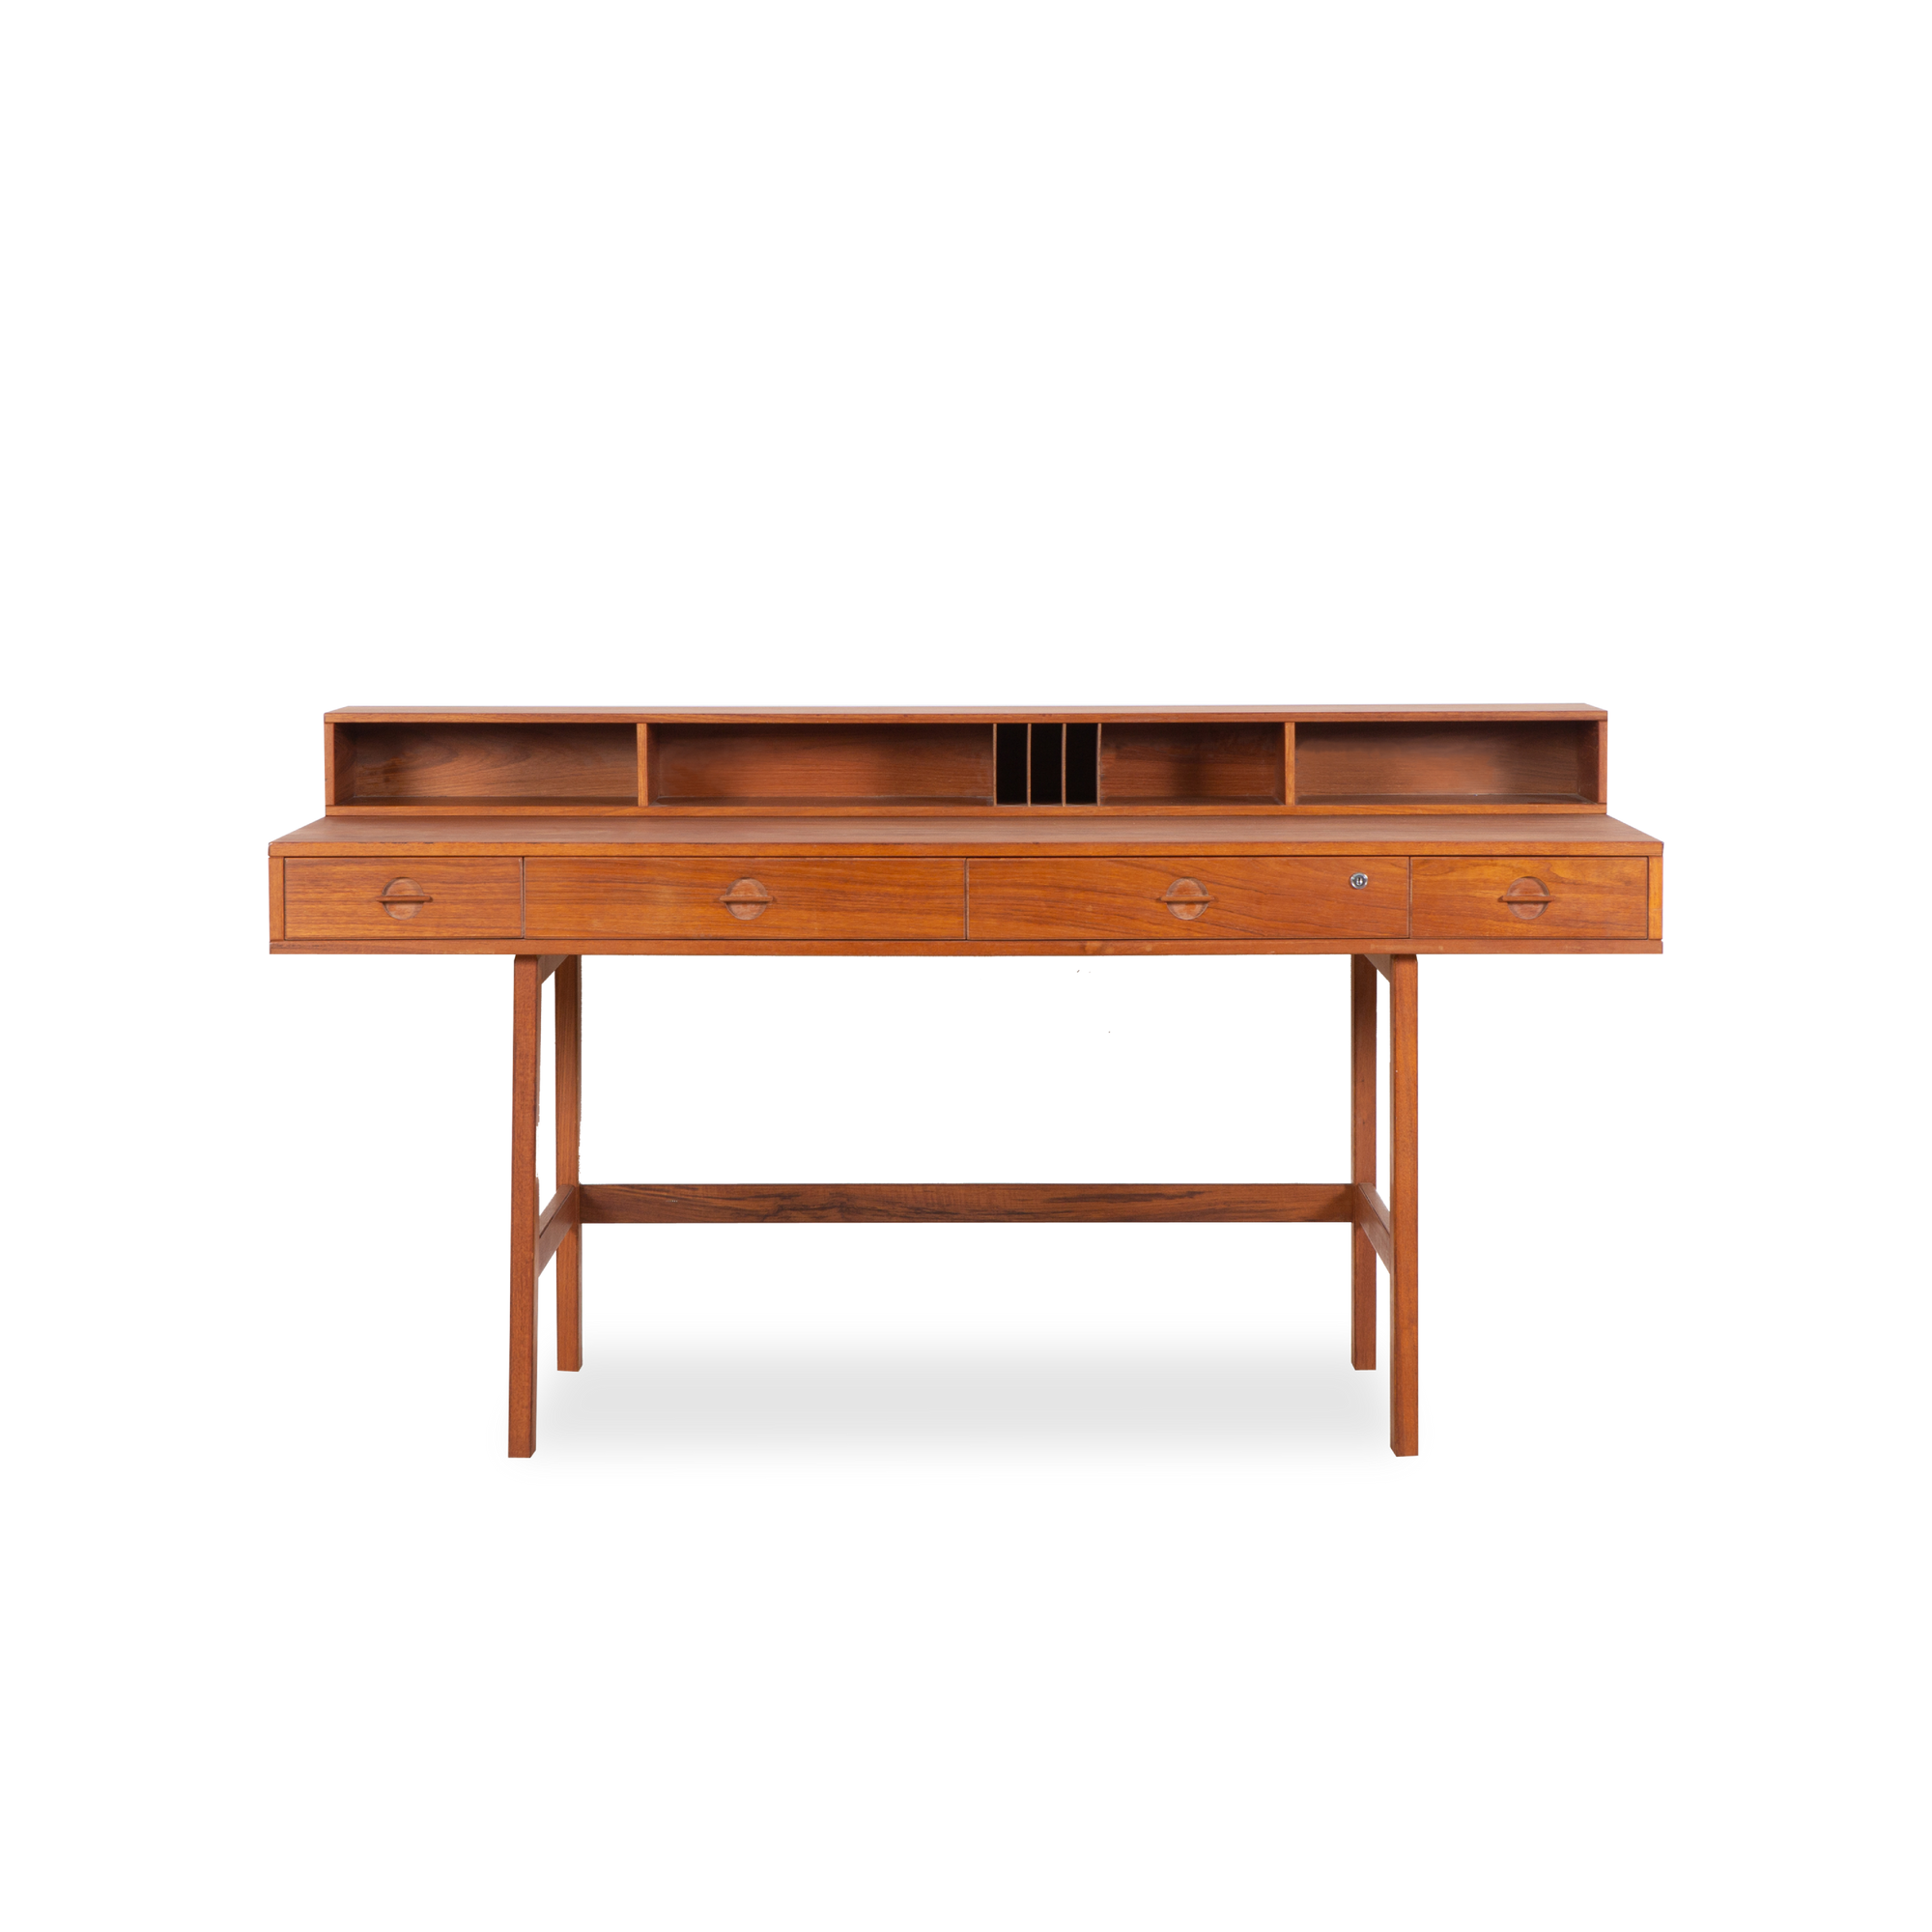 A stunning display of aged teak wood, this vintage Desk was designed by Peter Løvig Nielsen and manufactured by Løvig Dansk Design, circa 1960s.